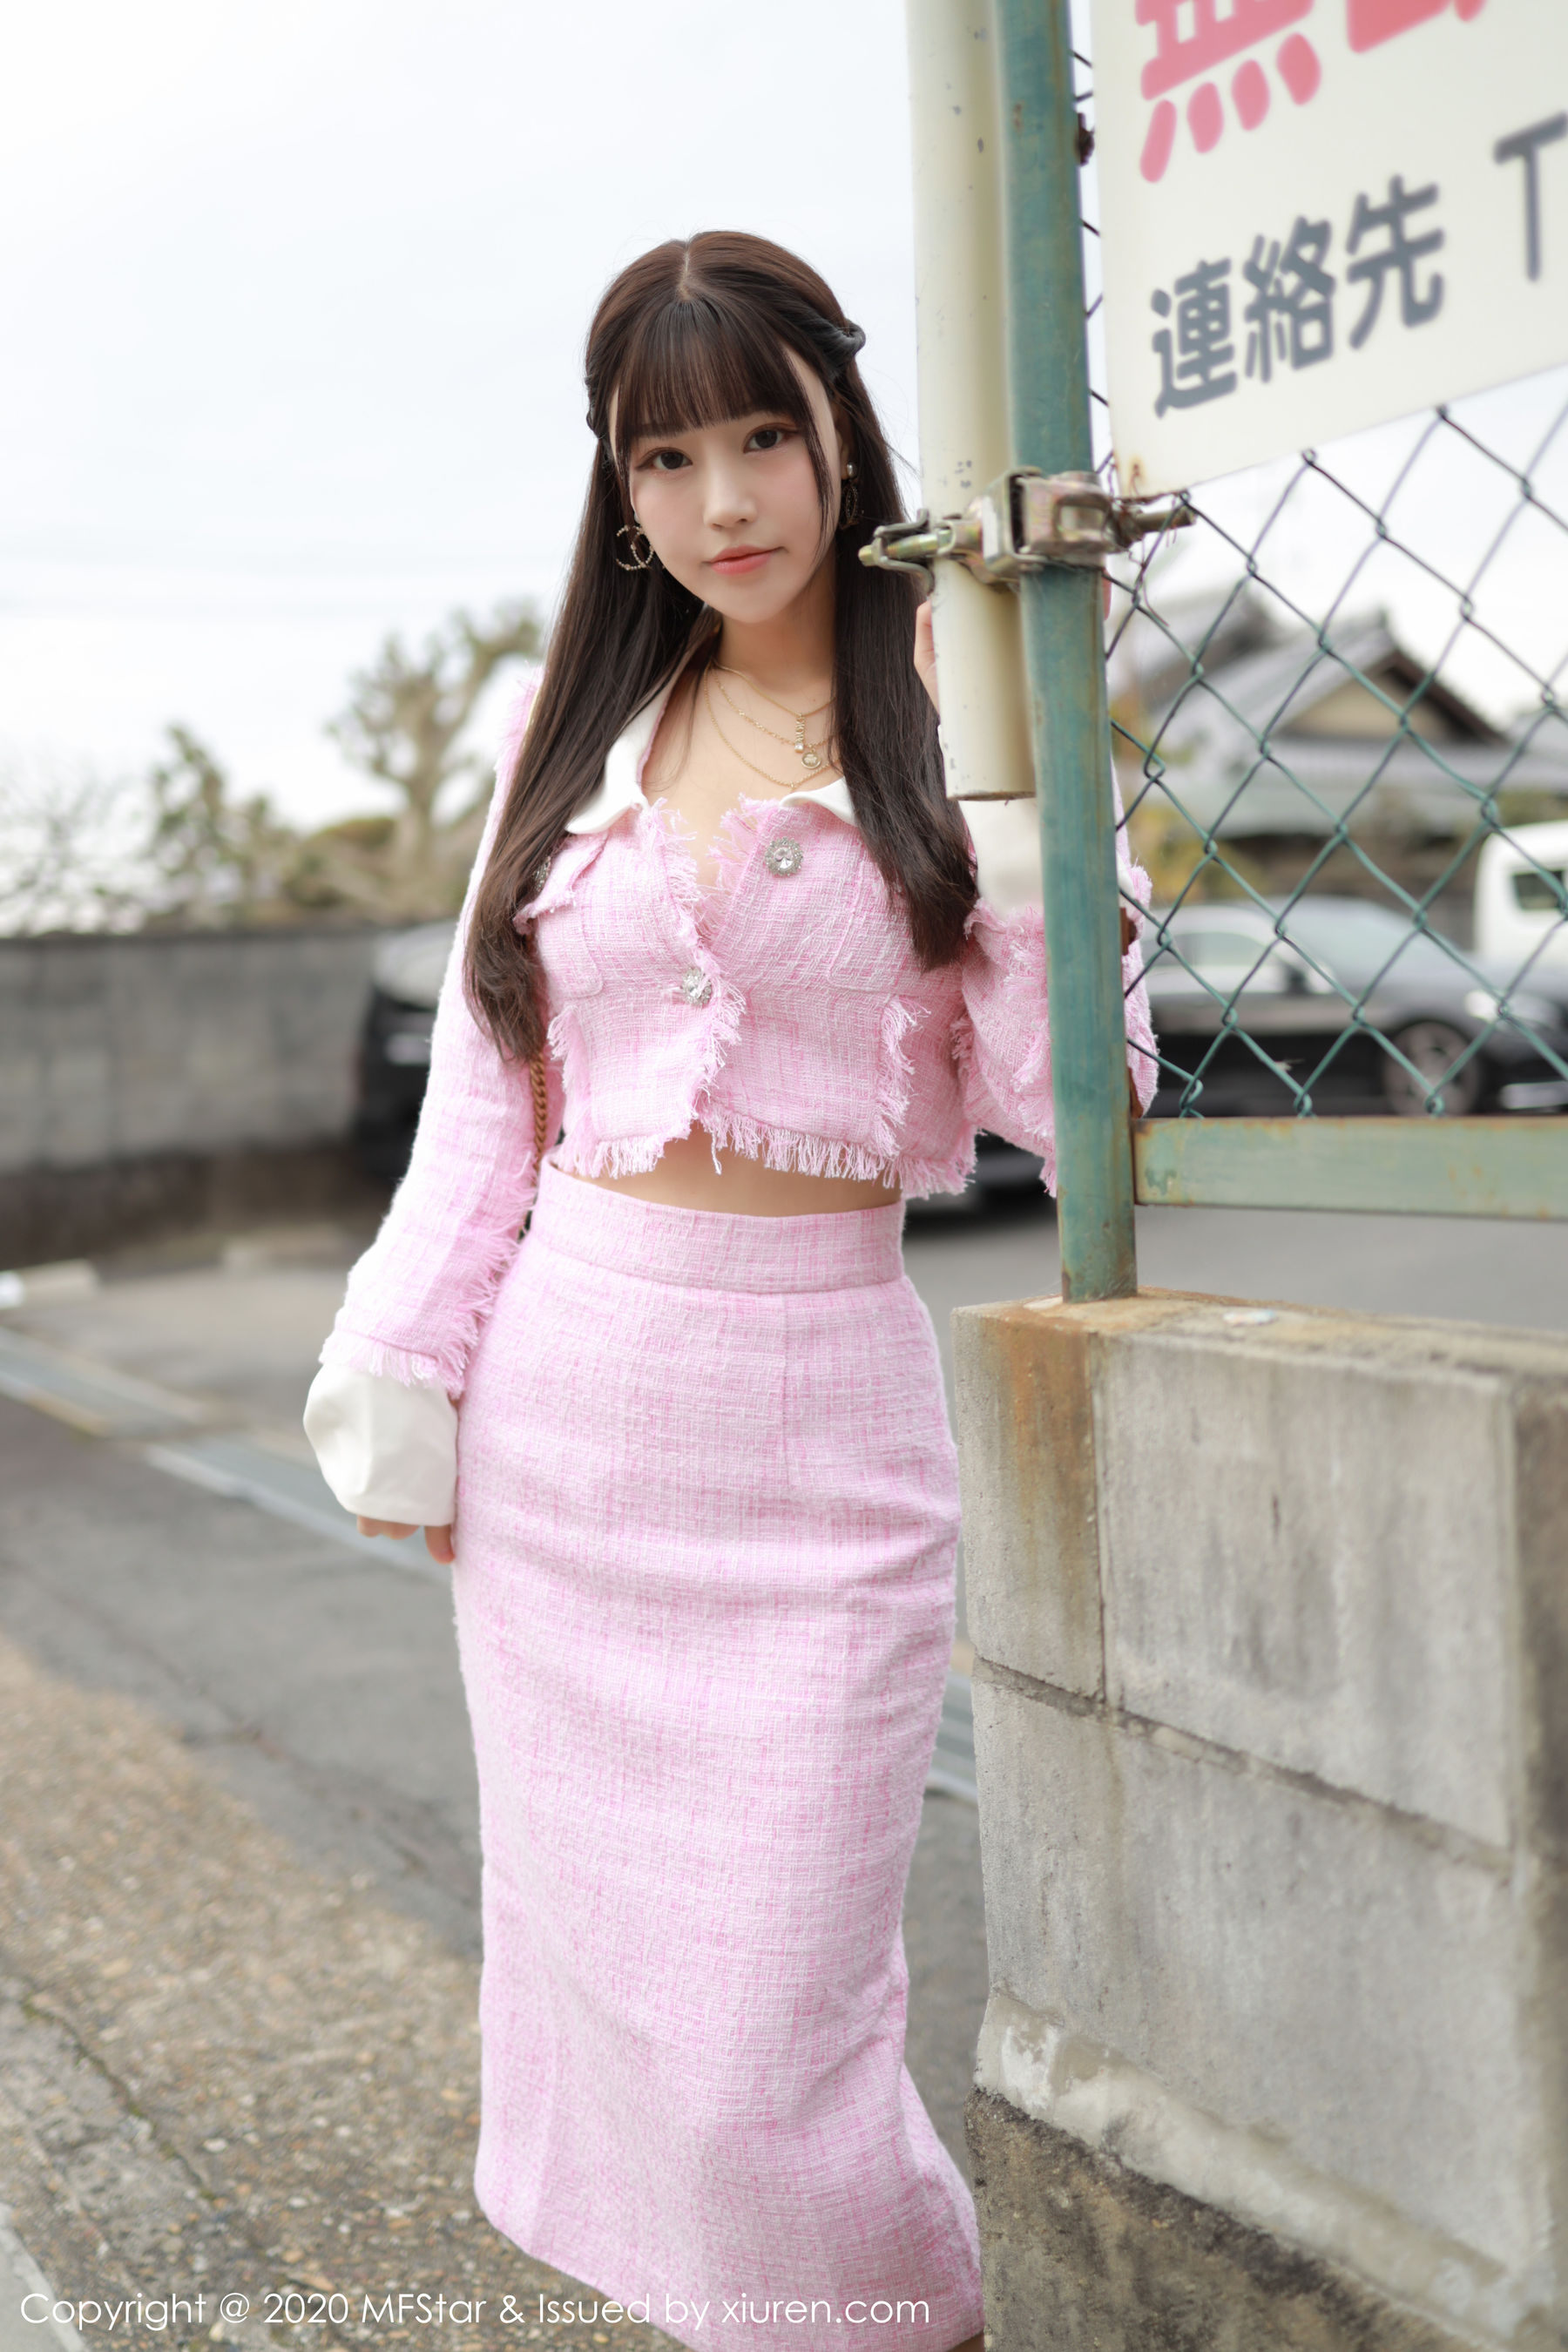 [Model Academy MFStar] Vol.278 Zhu Keer Flower "Série de tournage sur l'emplacement des vêtements roses"